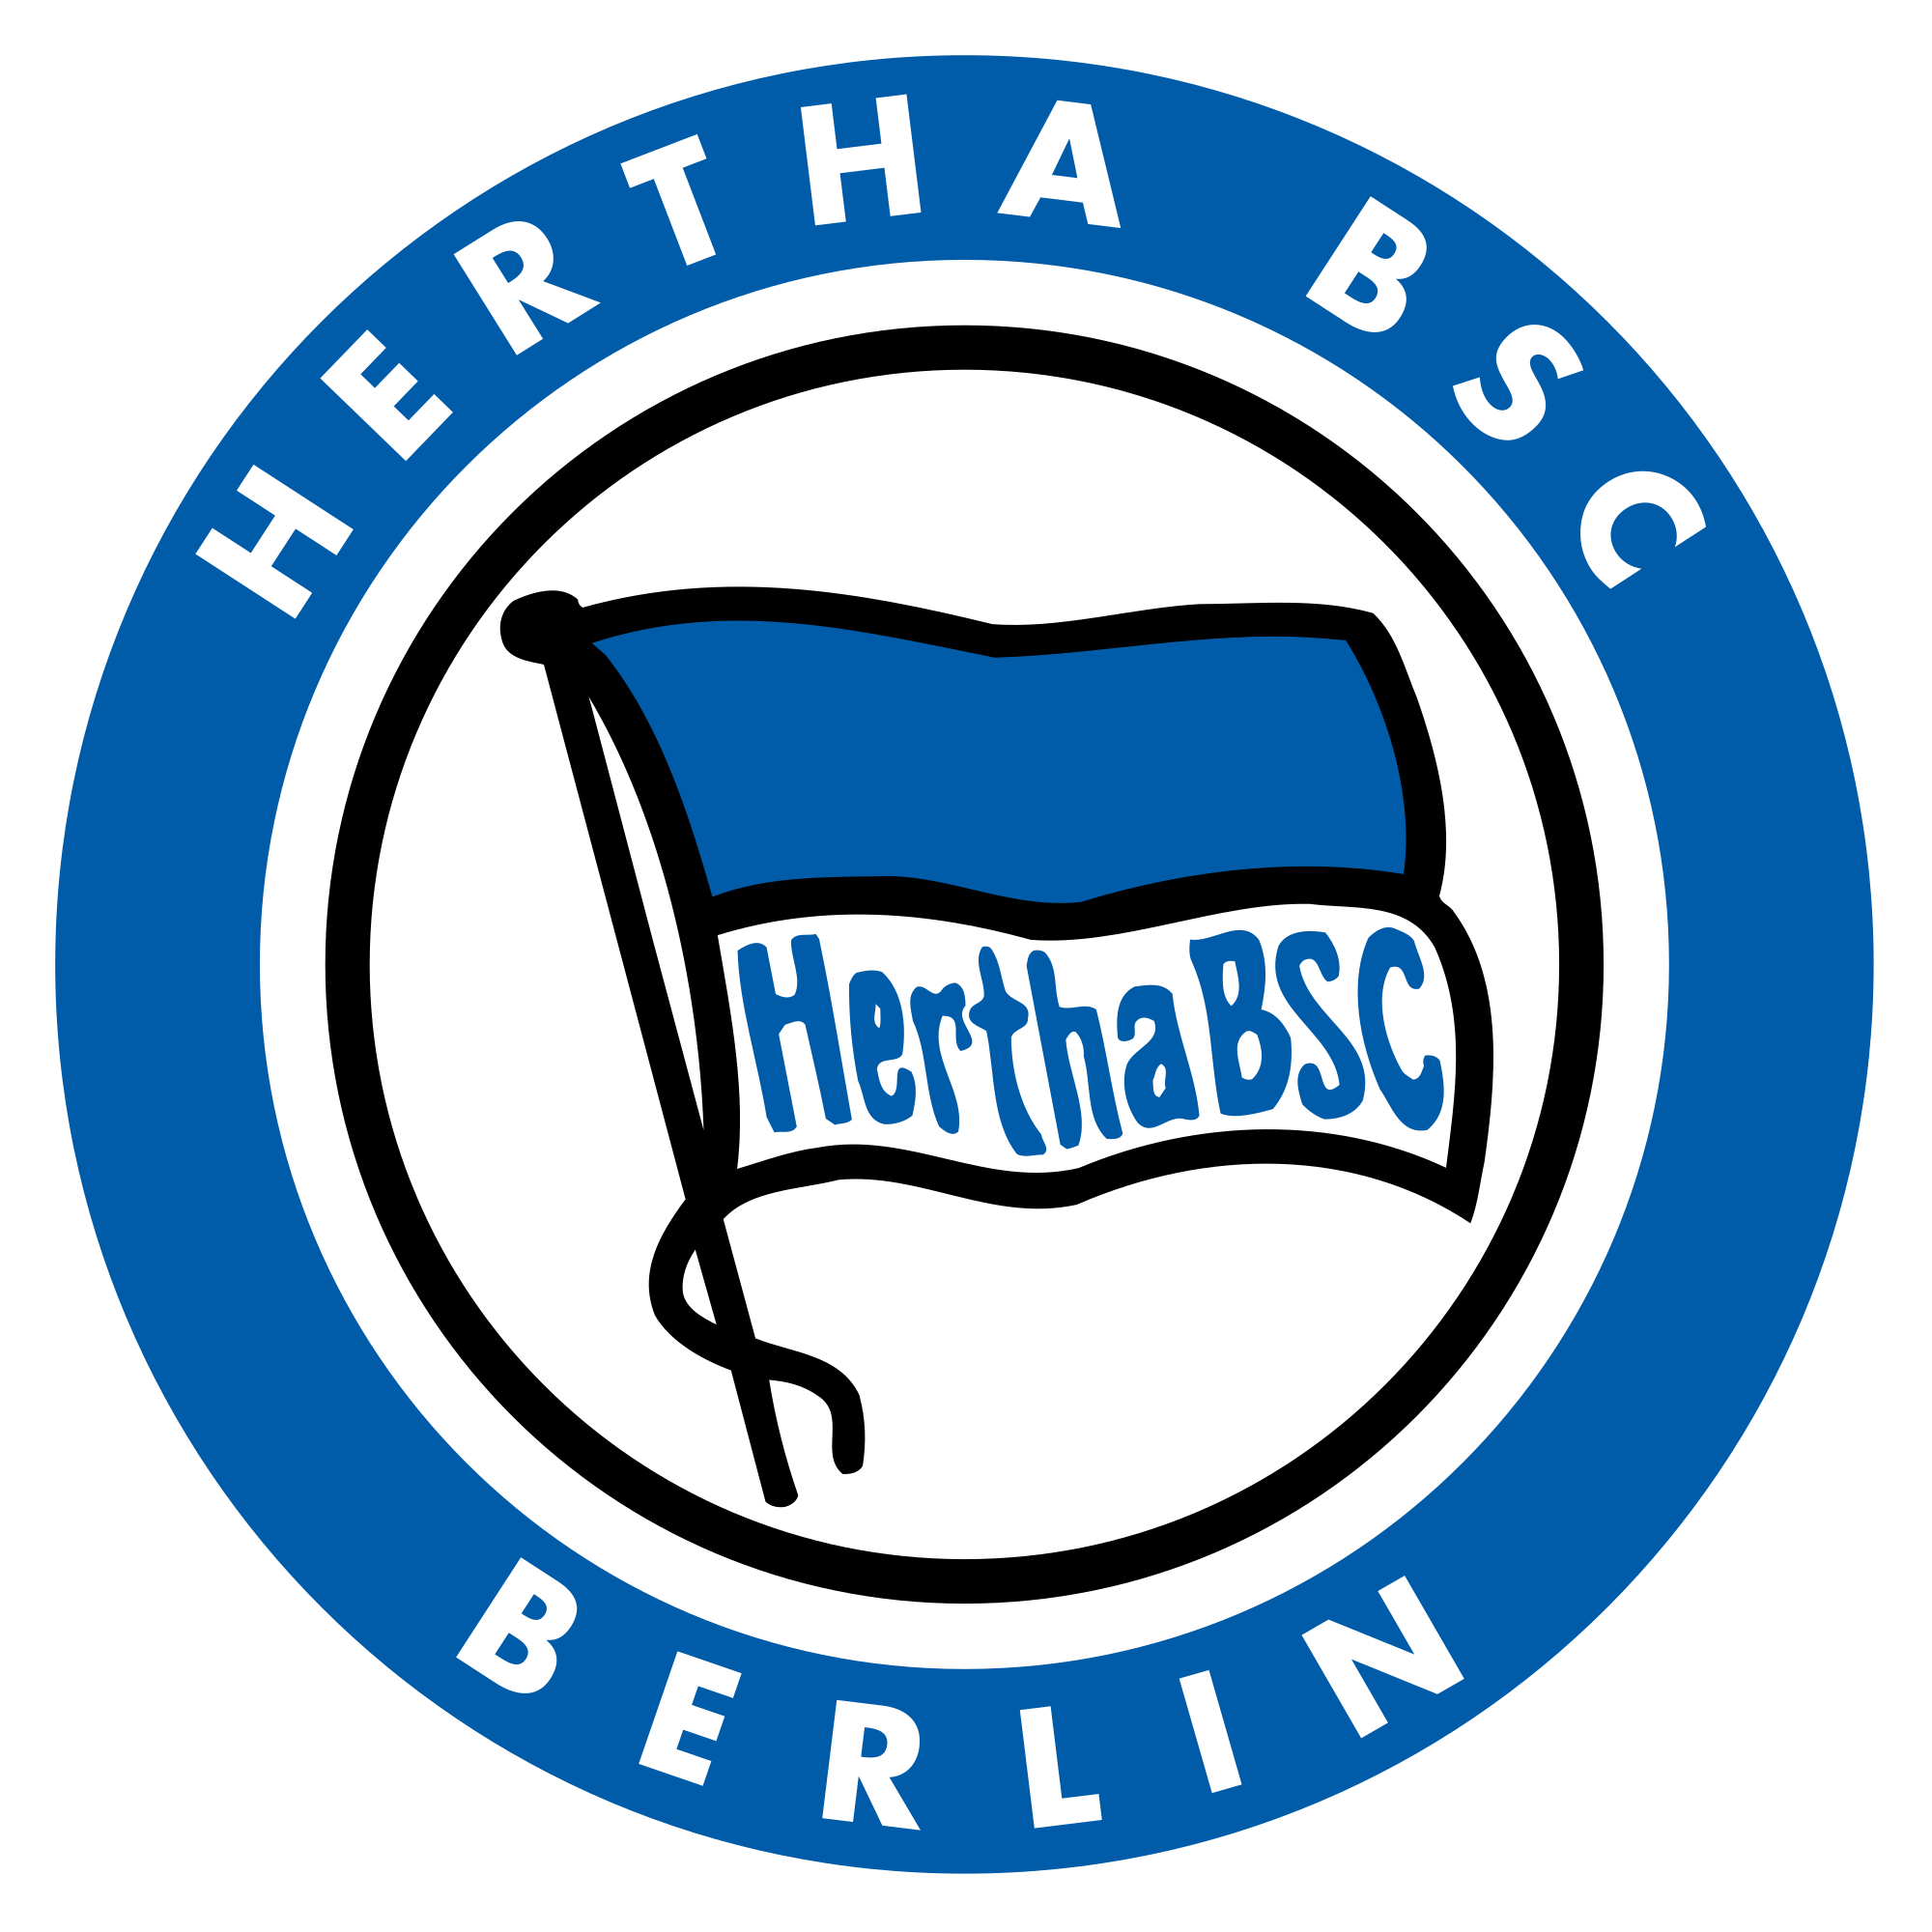 Hertha BSC Herb 2003